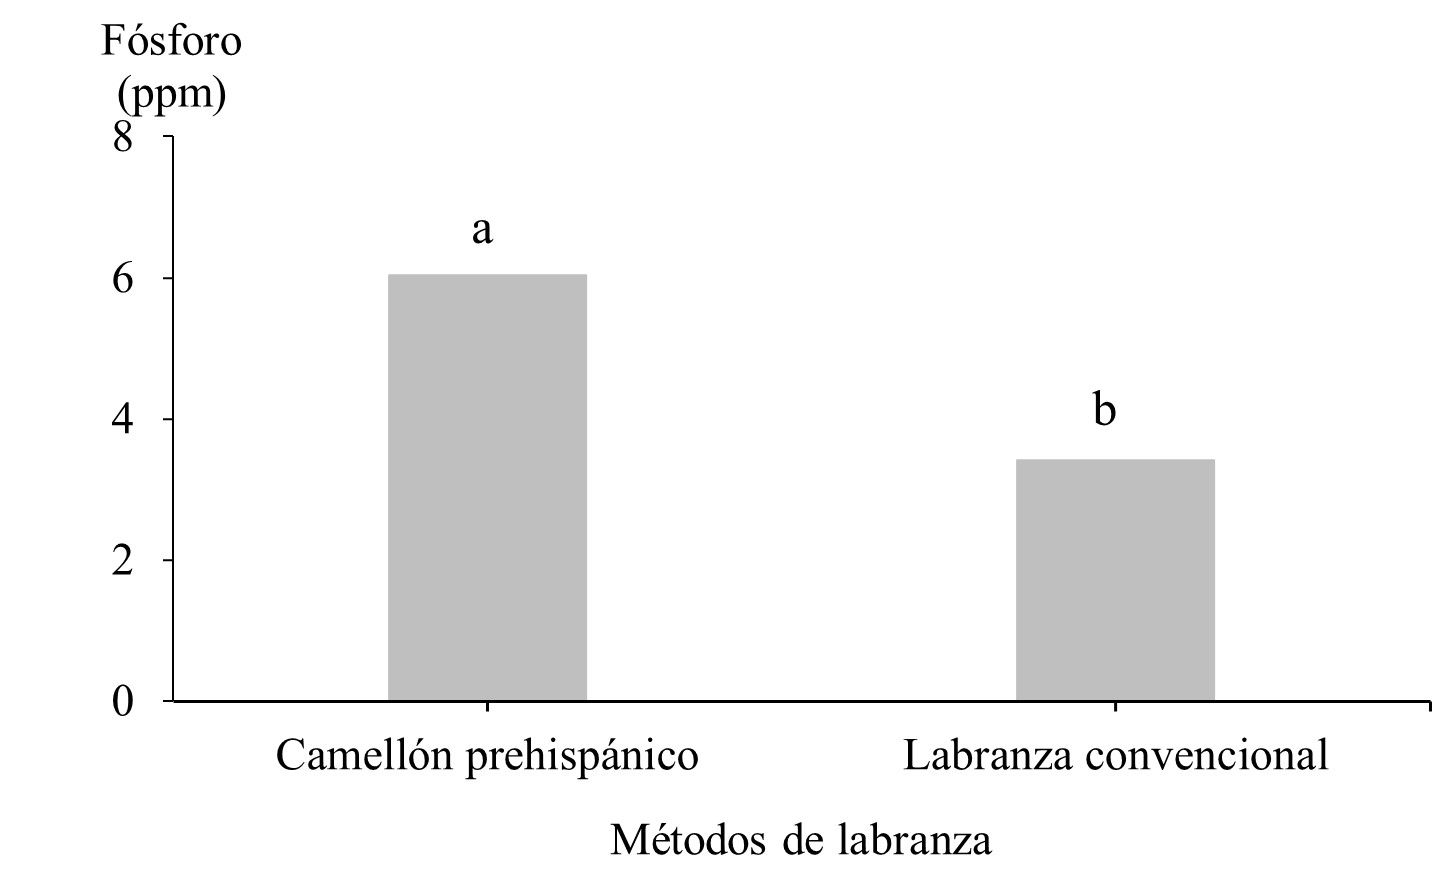 Contenido de fósforo (ppm), relacionados
con los métodos de labranza, El Madroño, Diriamba, 2018.